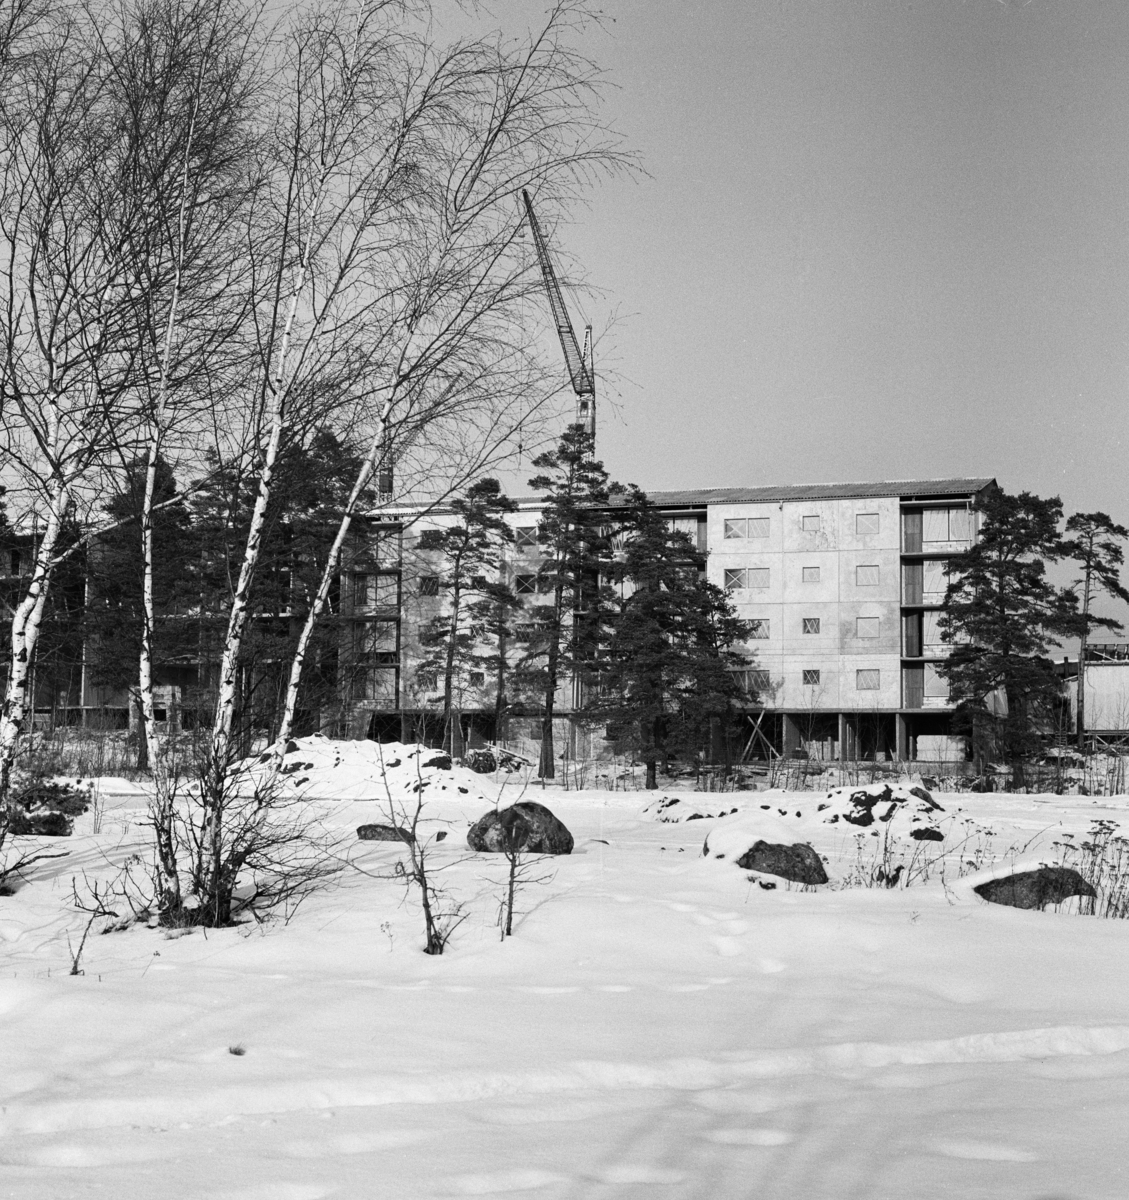 Bostadsområde
Exteriör, flerbostadshus i vinterlandskap med träd i förgrunden.